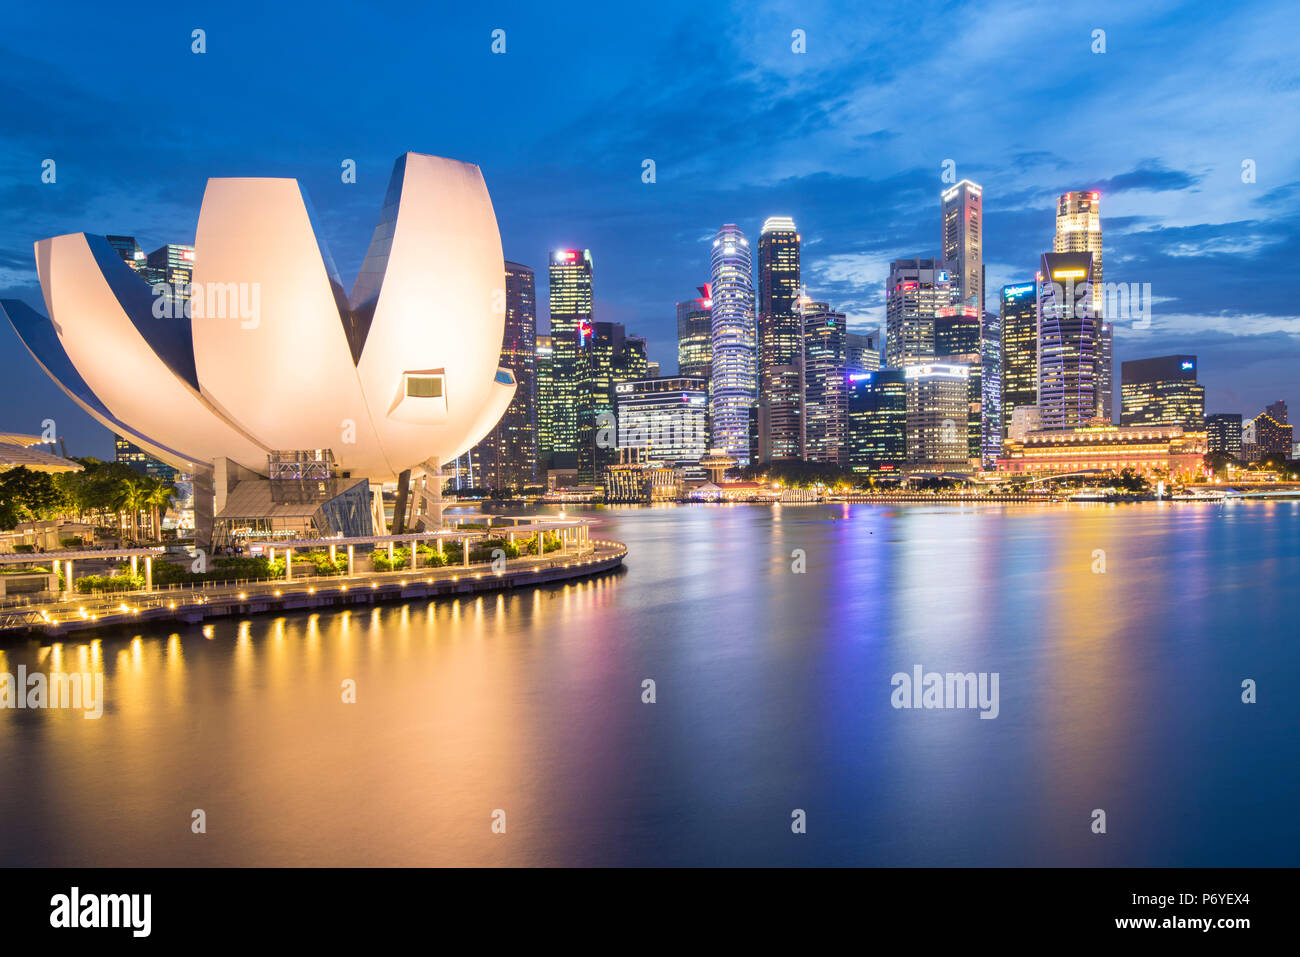 Singapour, République de Singapour, en Asie du sud-est. Le musée ArtScience et le gratte-ciel au crépuscule. Banque D'Images